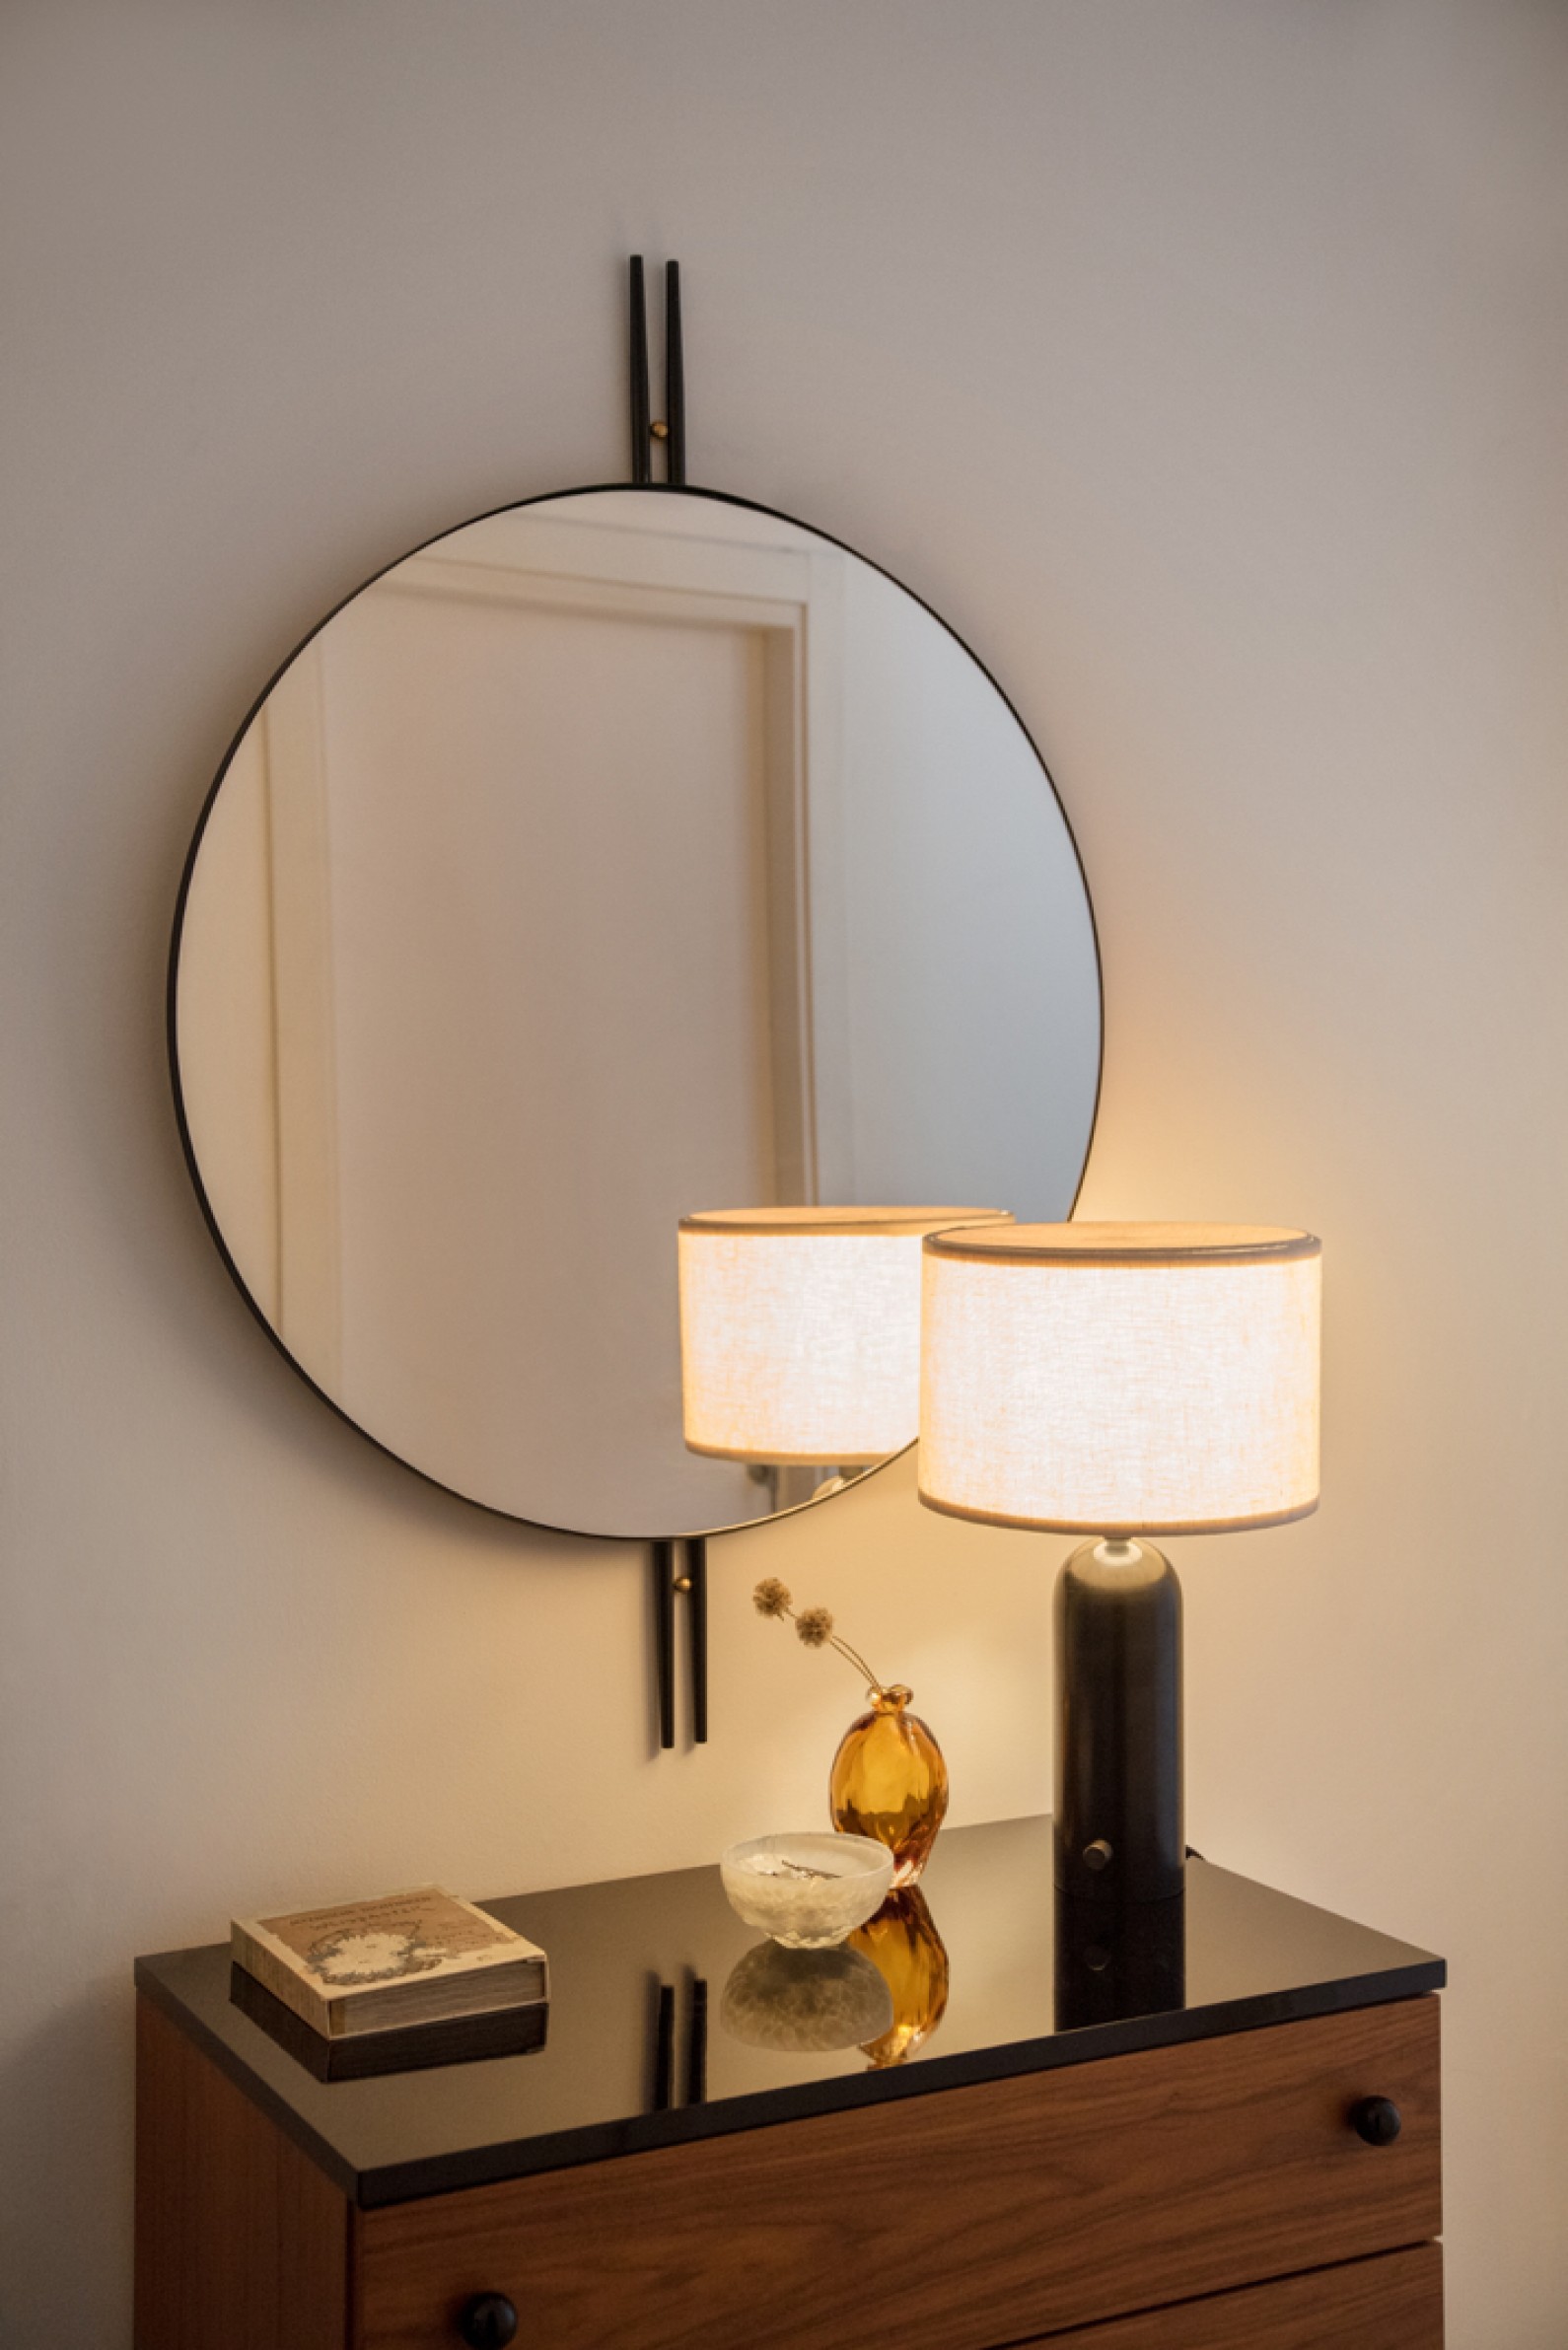  Miroir IOI (diam. 80 cm): design géométrique contemporain inspiré de l'Art Déco